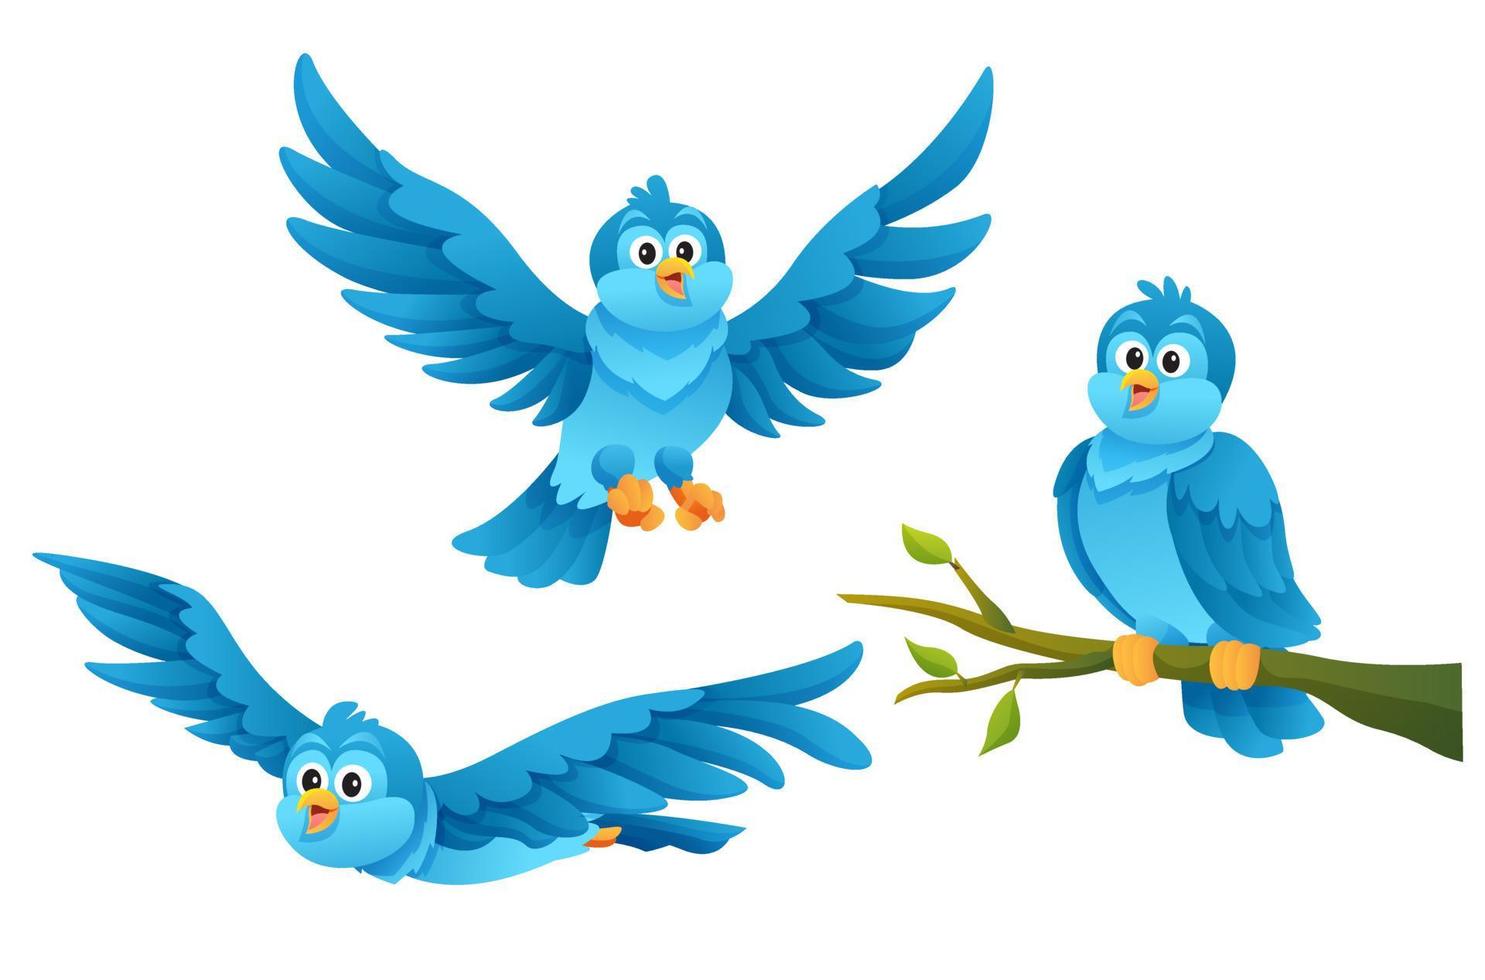 oiseau bleu mignon dans diverses poses illustration de dessin animé vecteur